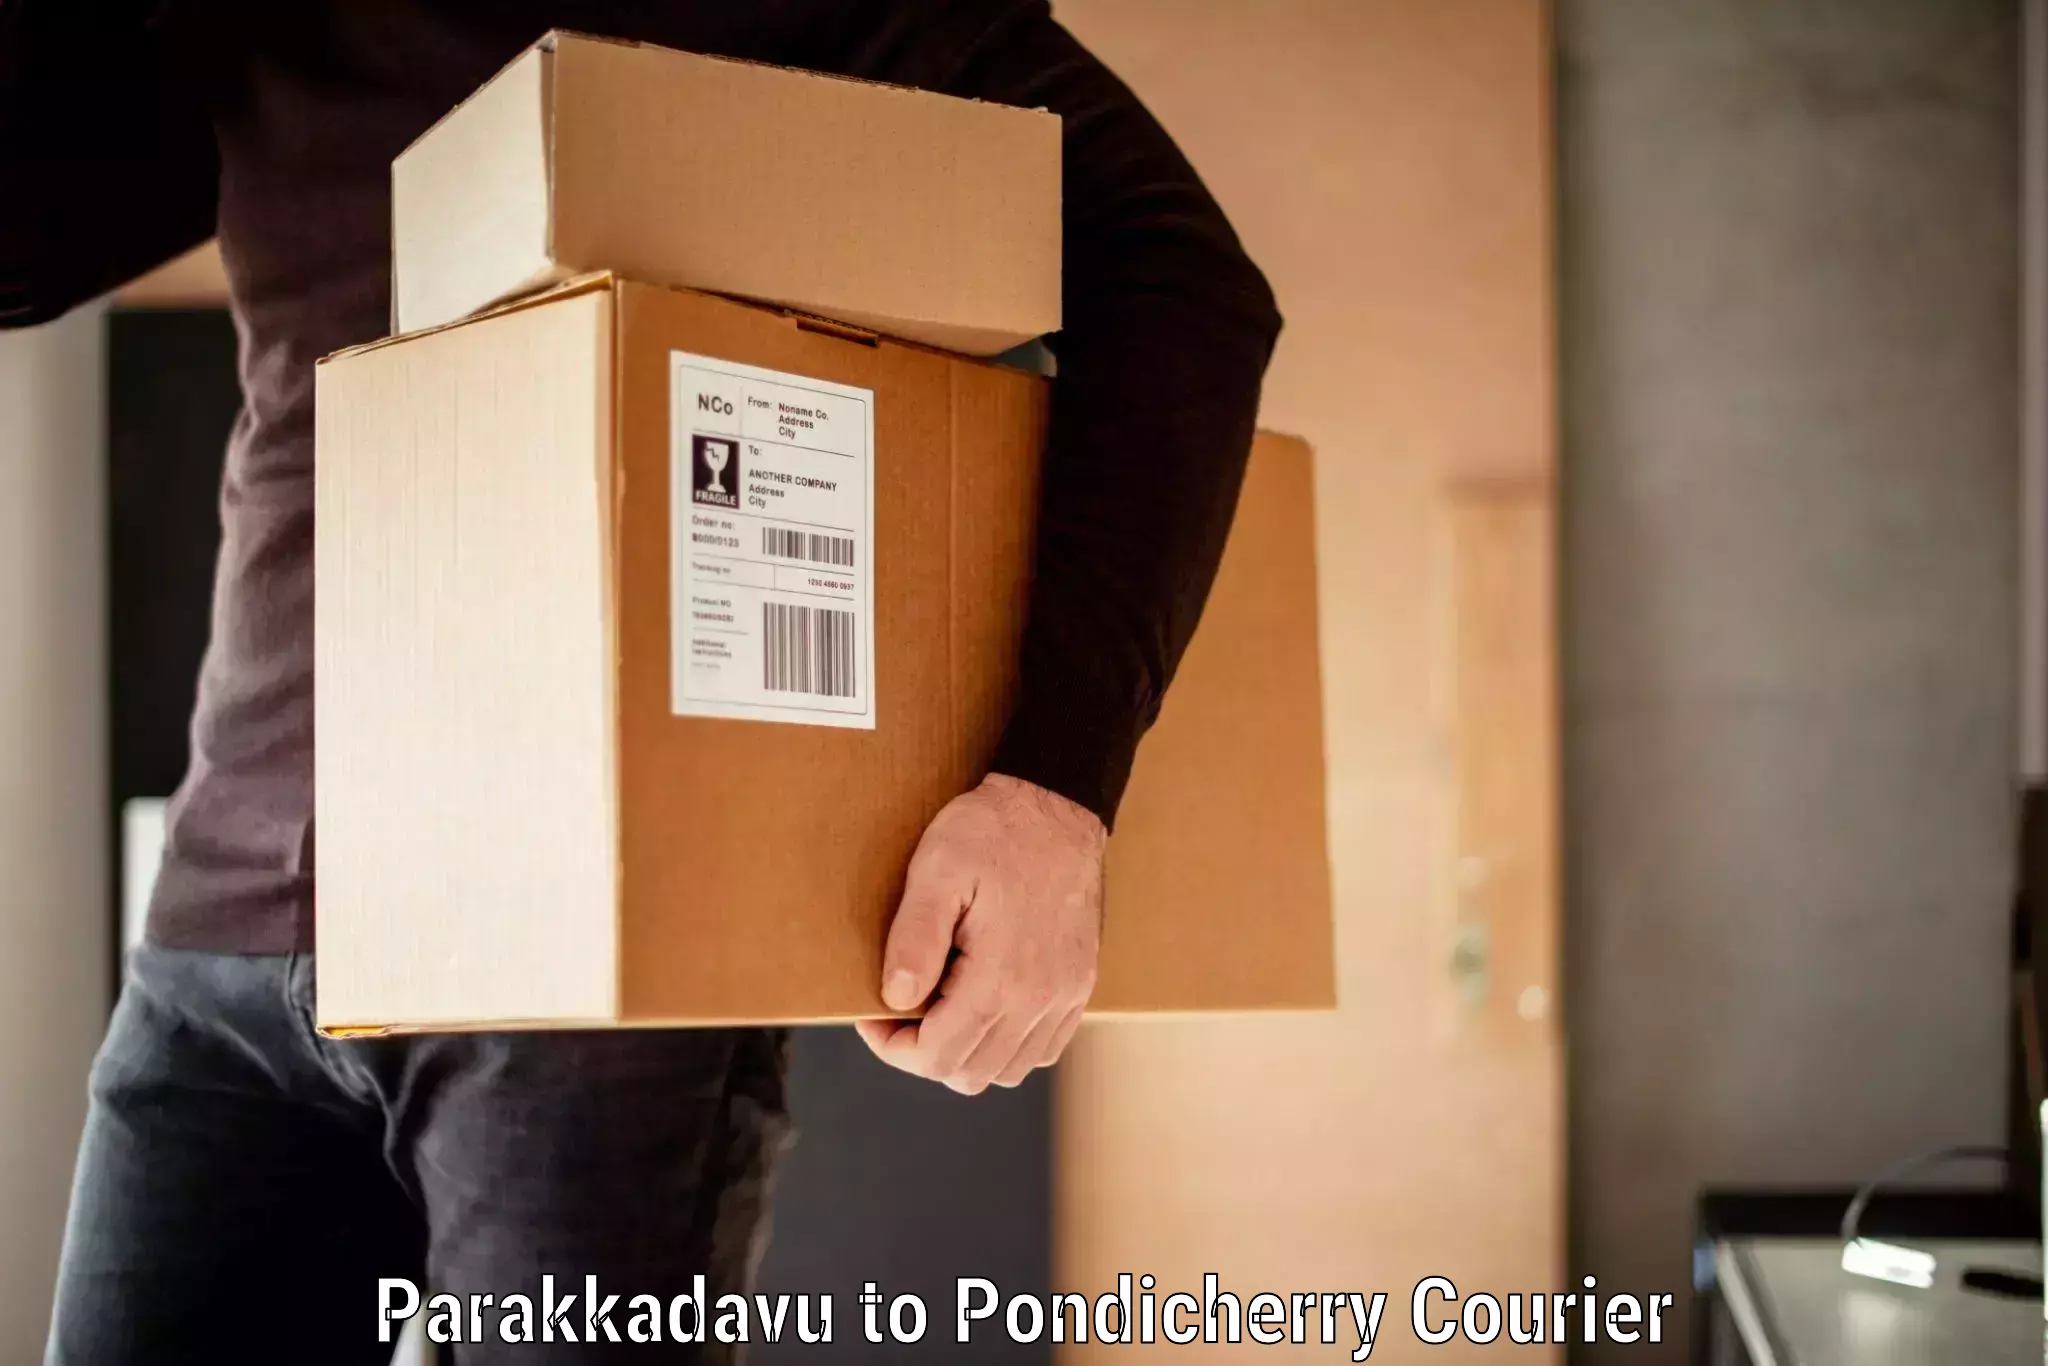 Personal baggage courier Parakkadavu to Metttupalayam